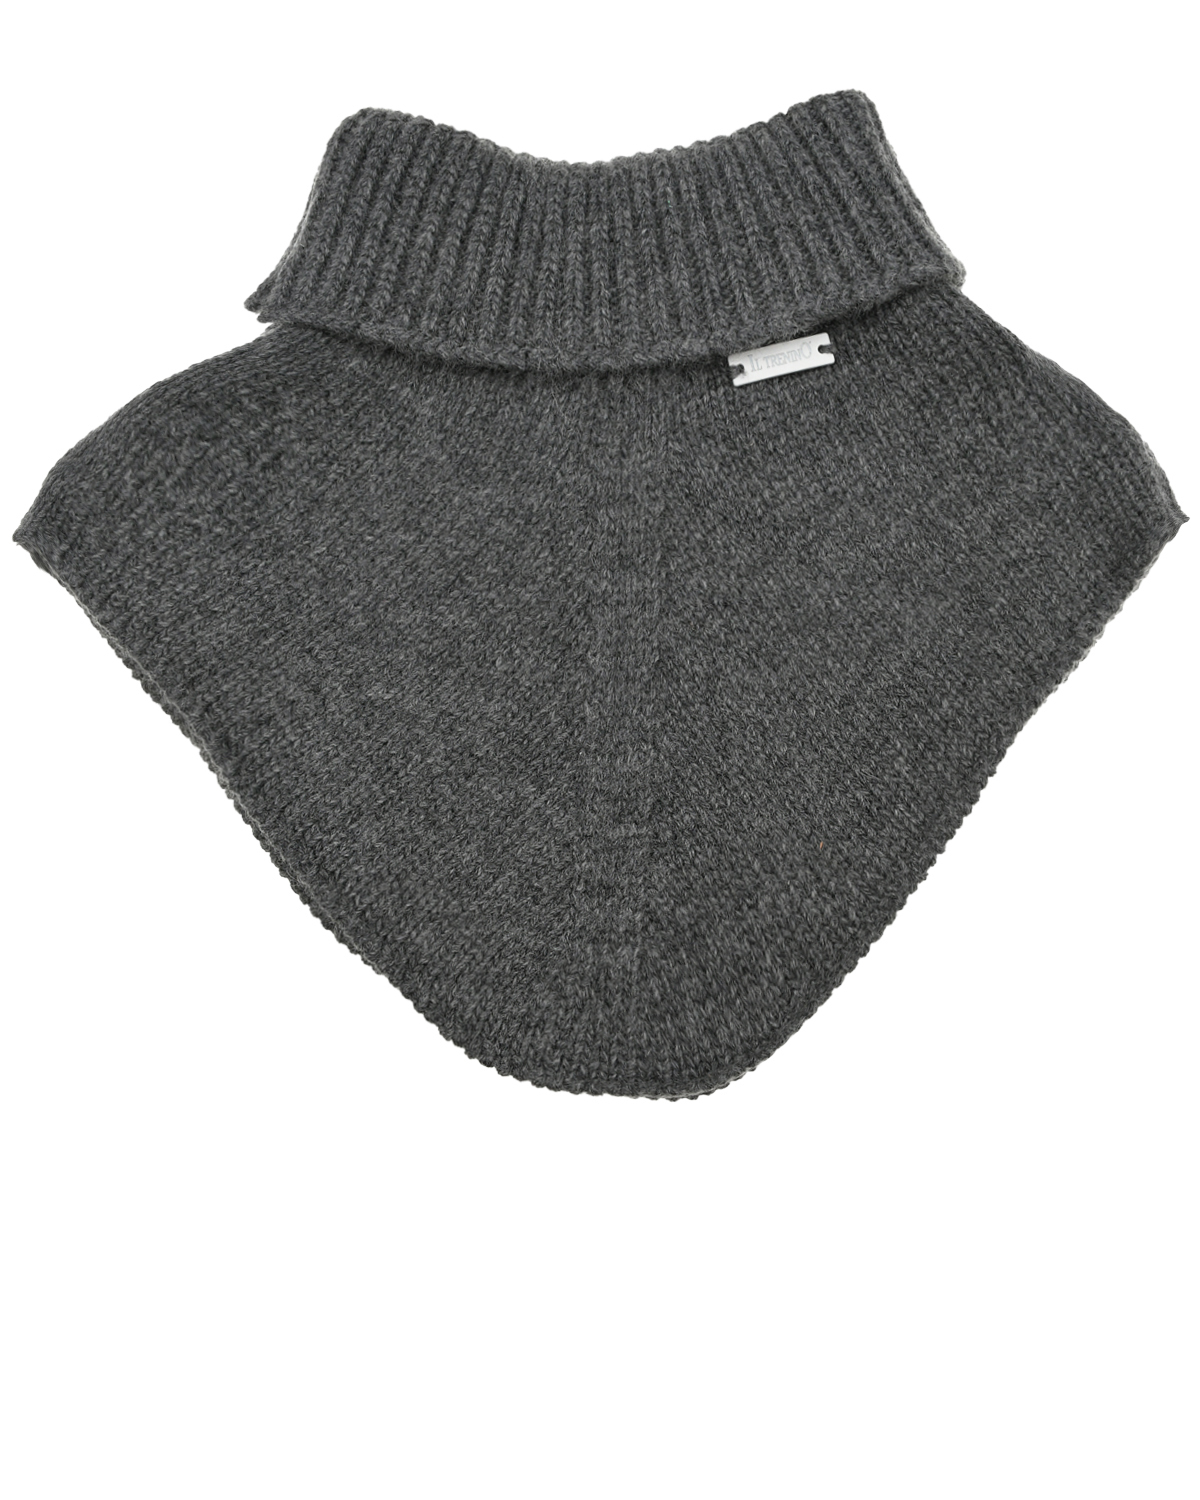 Темно-серый шарф-горло из шерсти и кашемира Il Trenino детское, размер unica